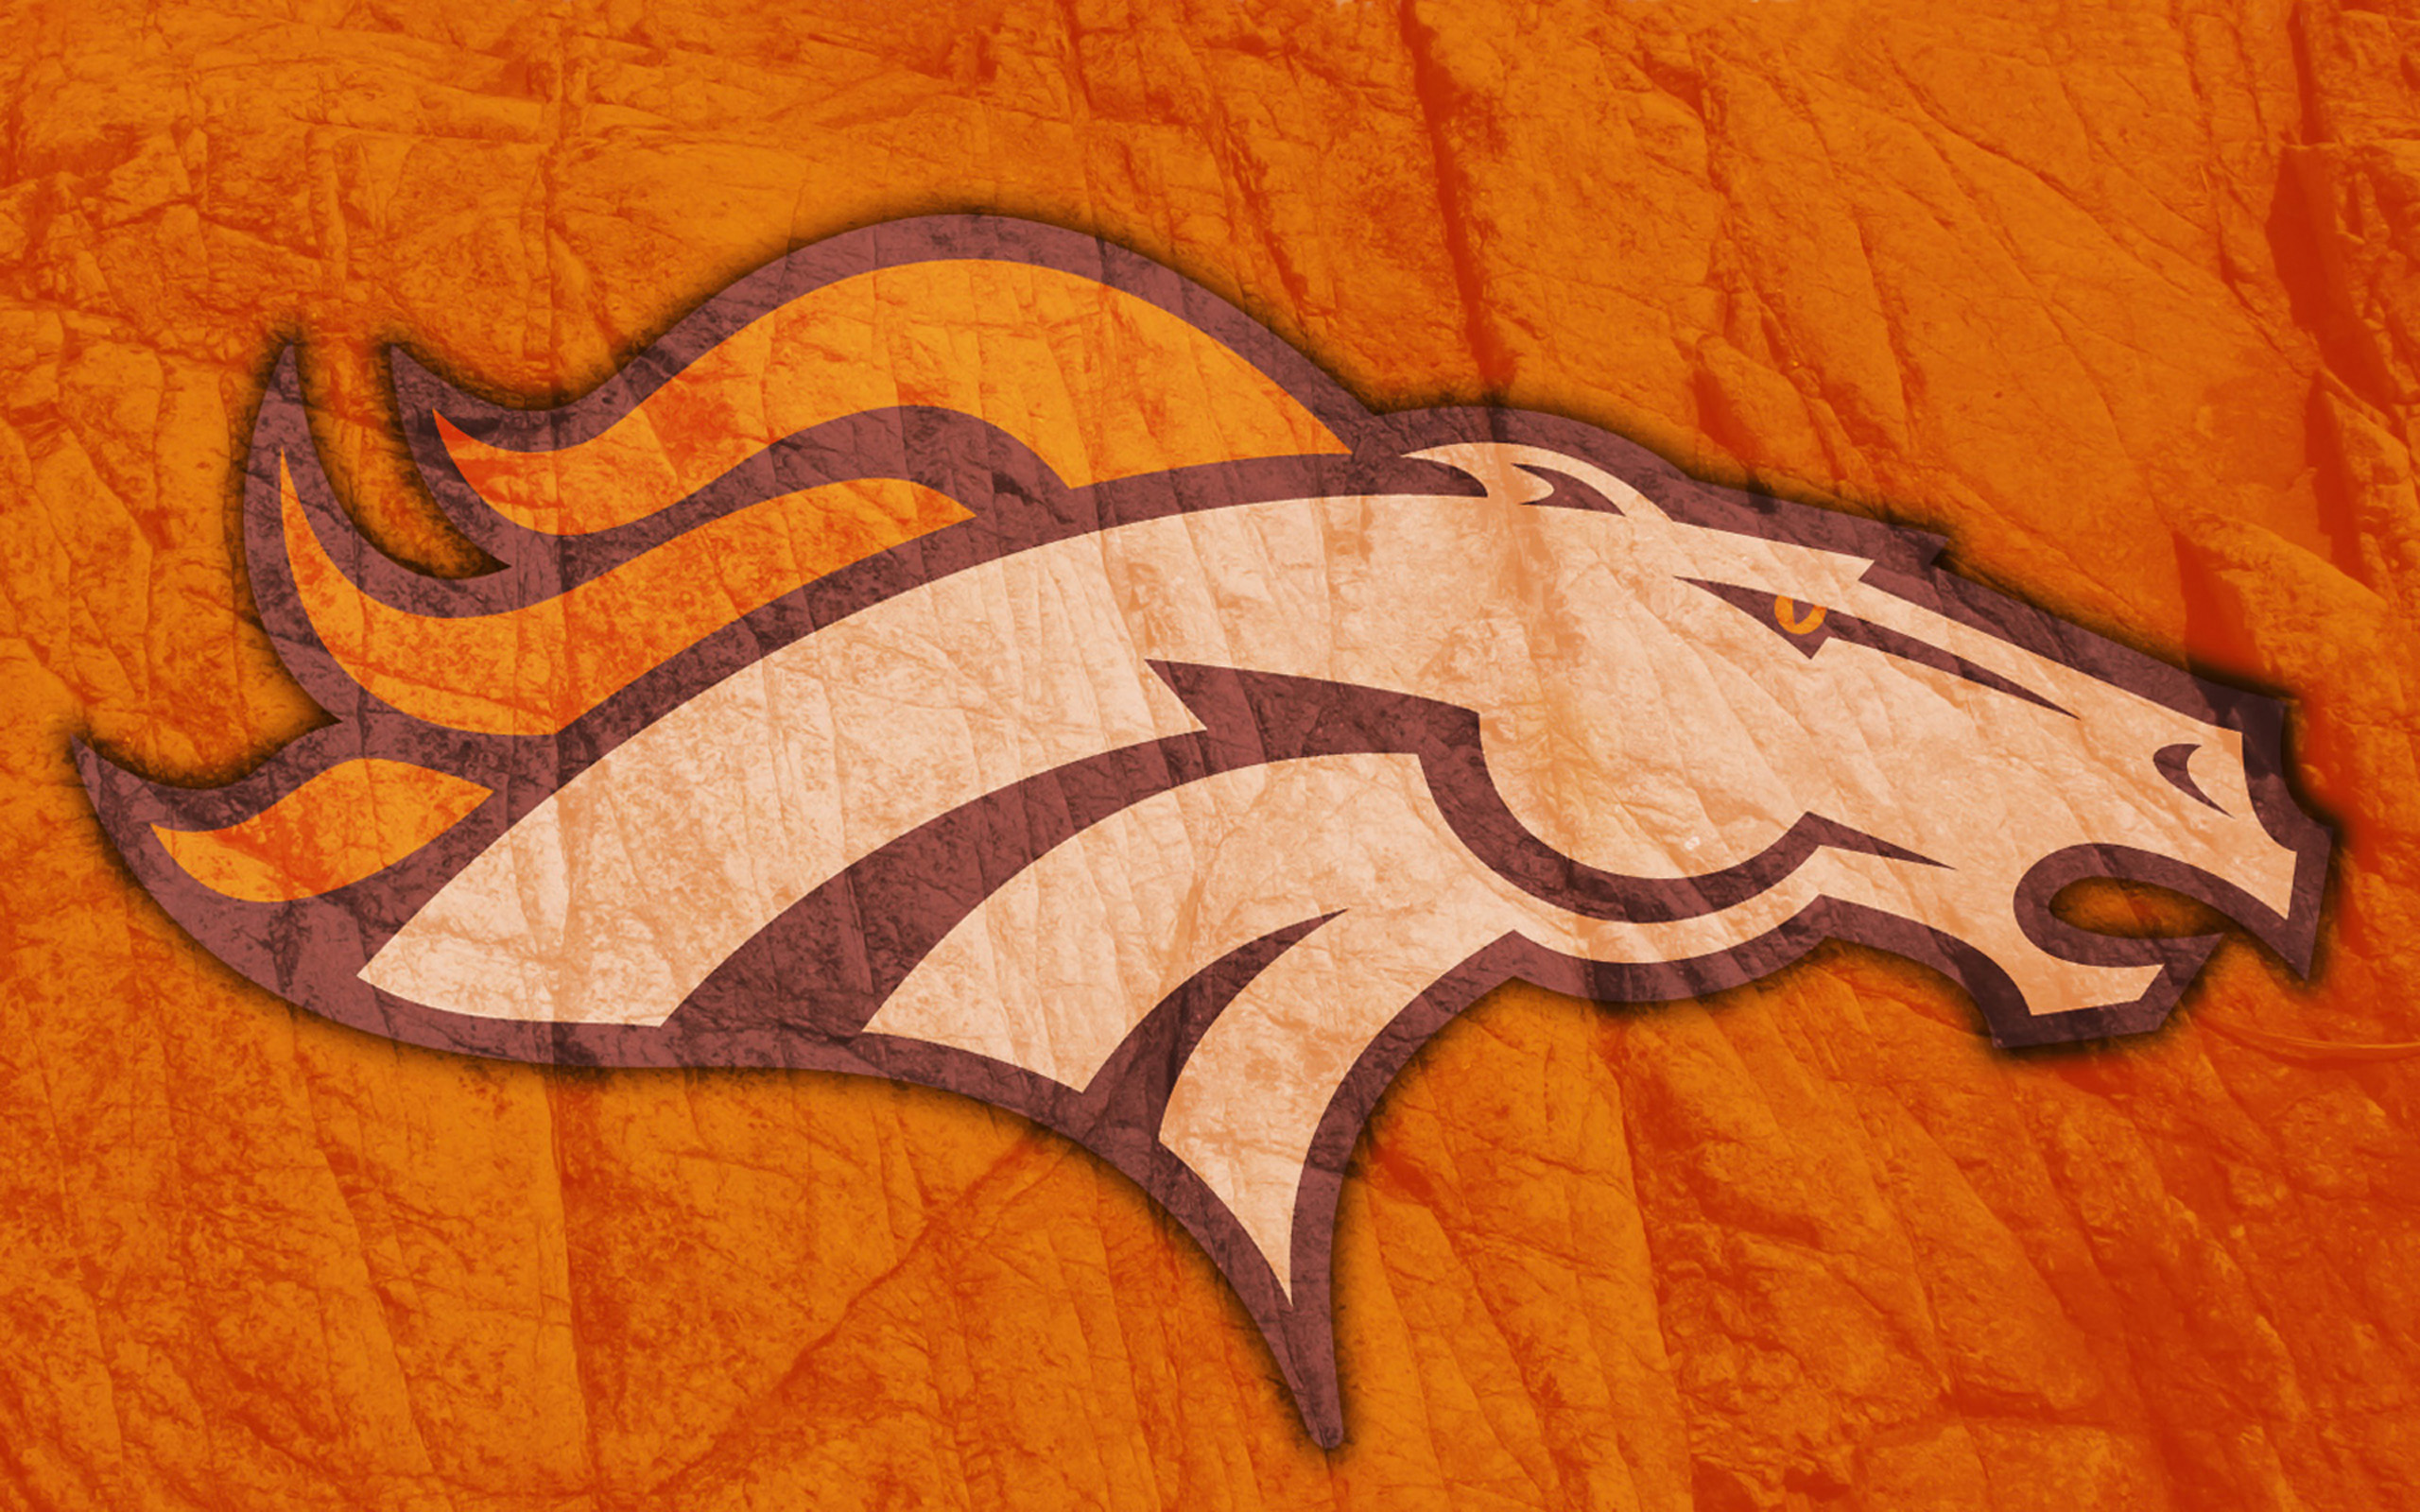 Sports Denver Broncos HD Wallpaper | Background Image